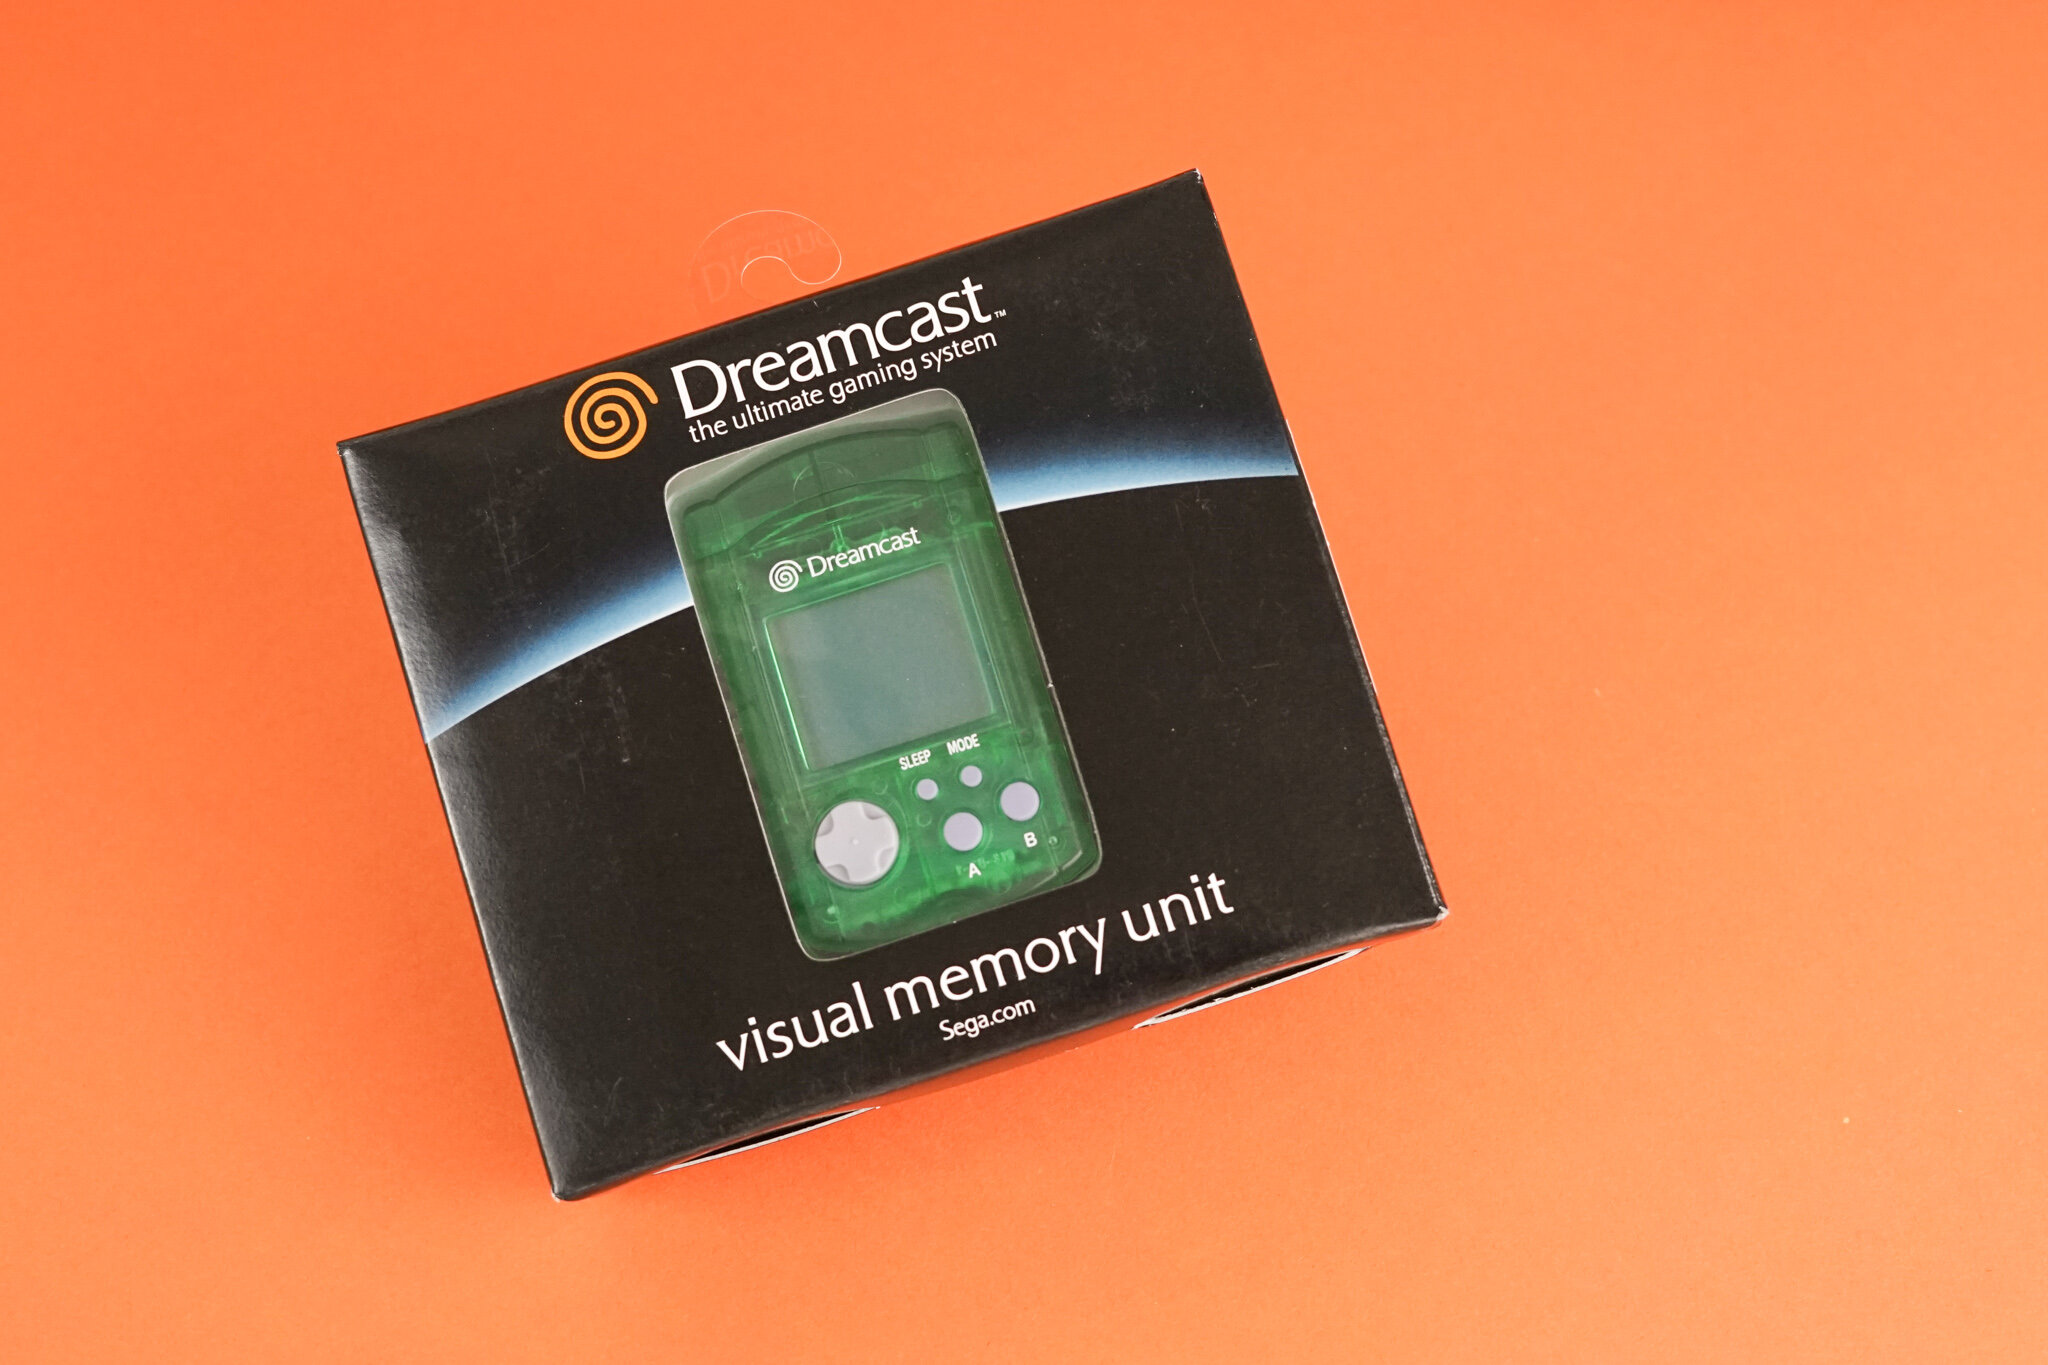 Sega Dreamcast memory card - Video games & consoles